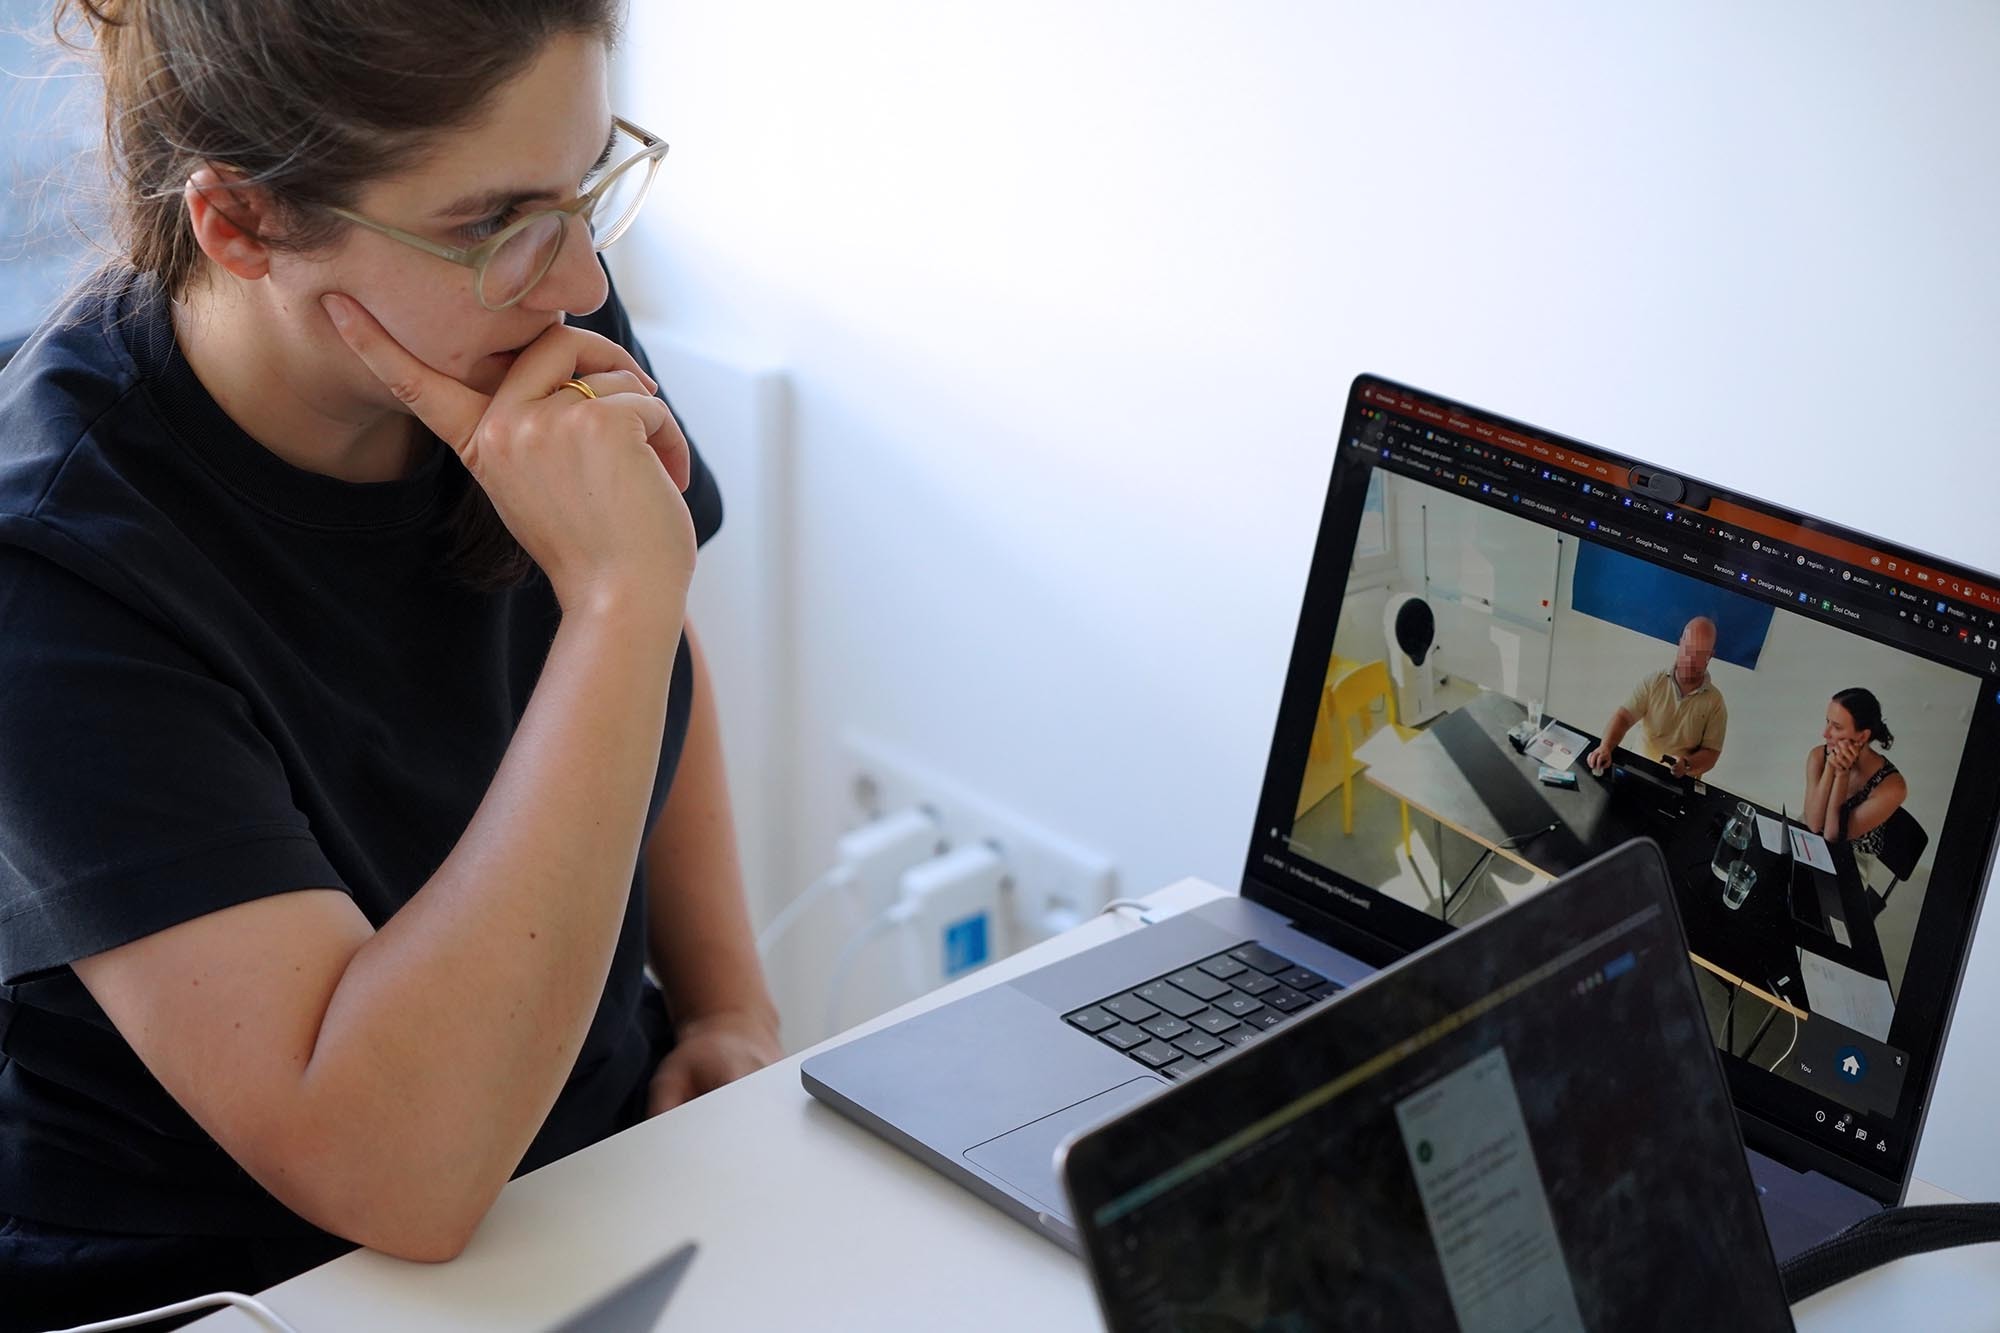 Eine junge Frau im schwarzen T-Shirt schaut konzentriert auf einen Laptop-Computer. Dort sieht man einen Mann und eine Frau, die an einem Tisch sitzen. Der Mann benutzt einen Computer mit einer Maus, die Frau schaut ihm dabei zu.